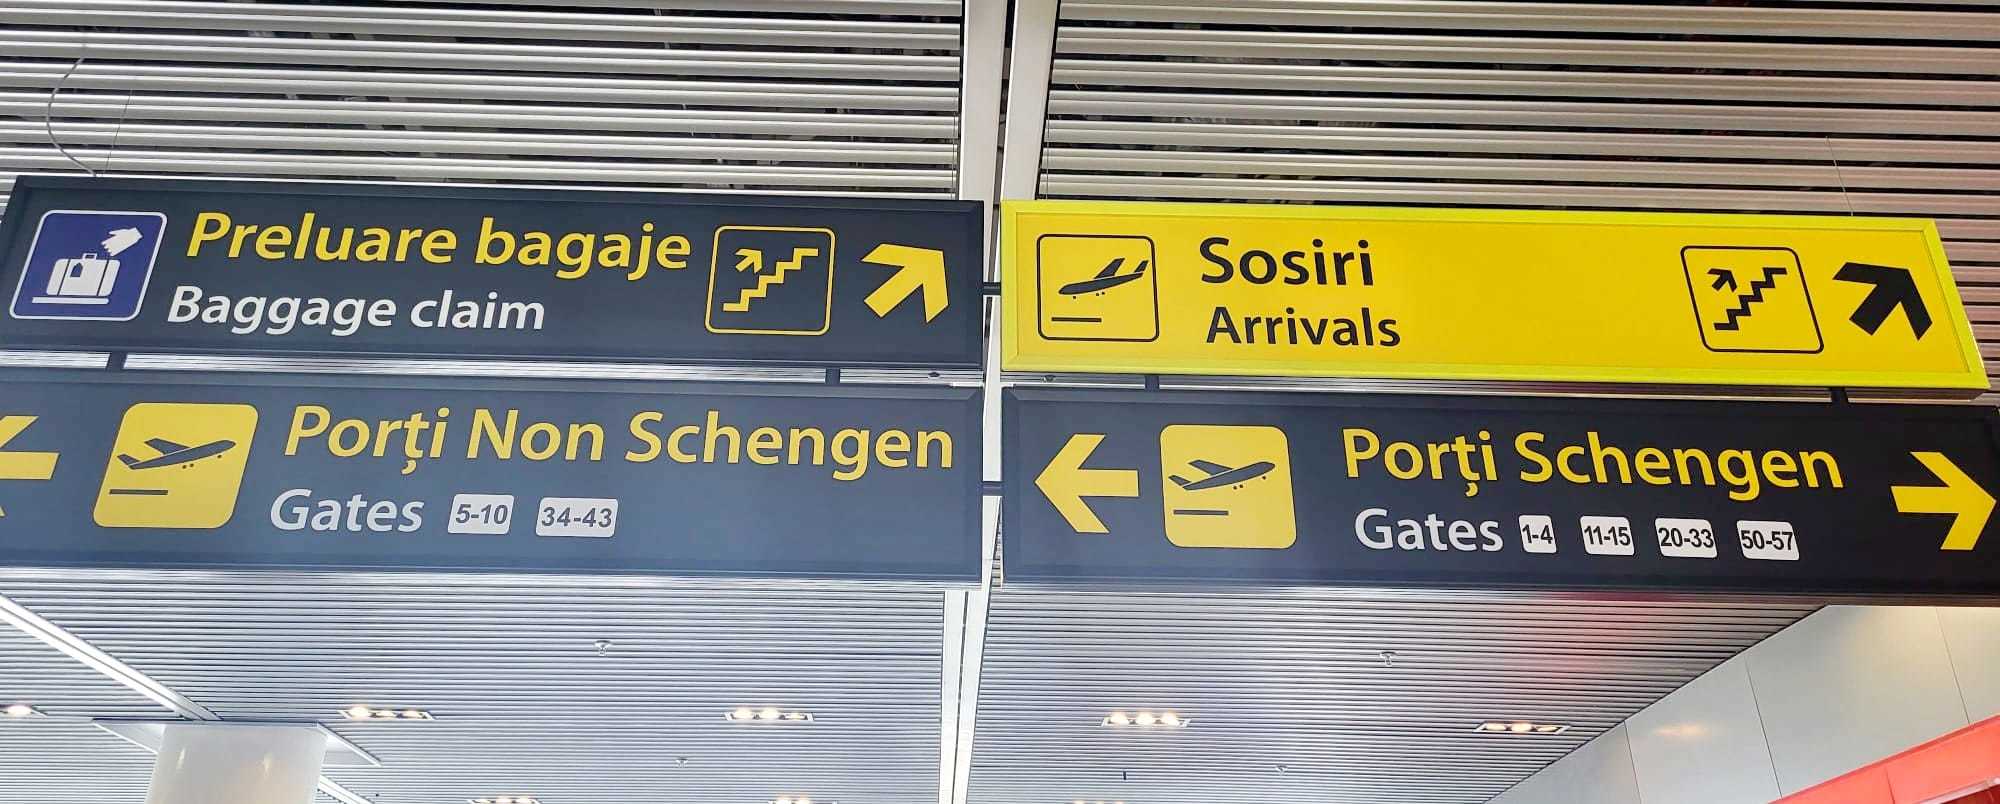 Ministrul Economiei, Ştefan Radu Oprea: Aderarea României la Schengen înseamnă o creştere a numărului de turişti, pentru că aşa s-a întâmplat în toate statele care au aderat la spaţiul Schengen